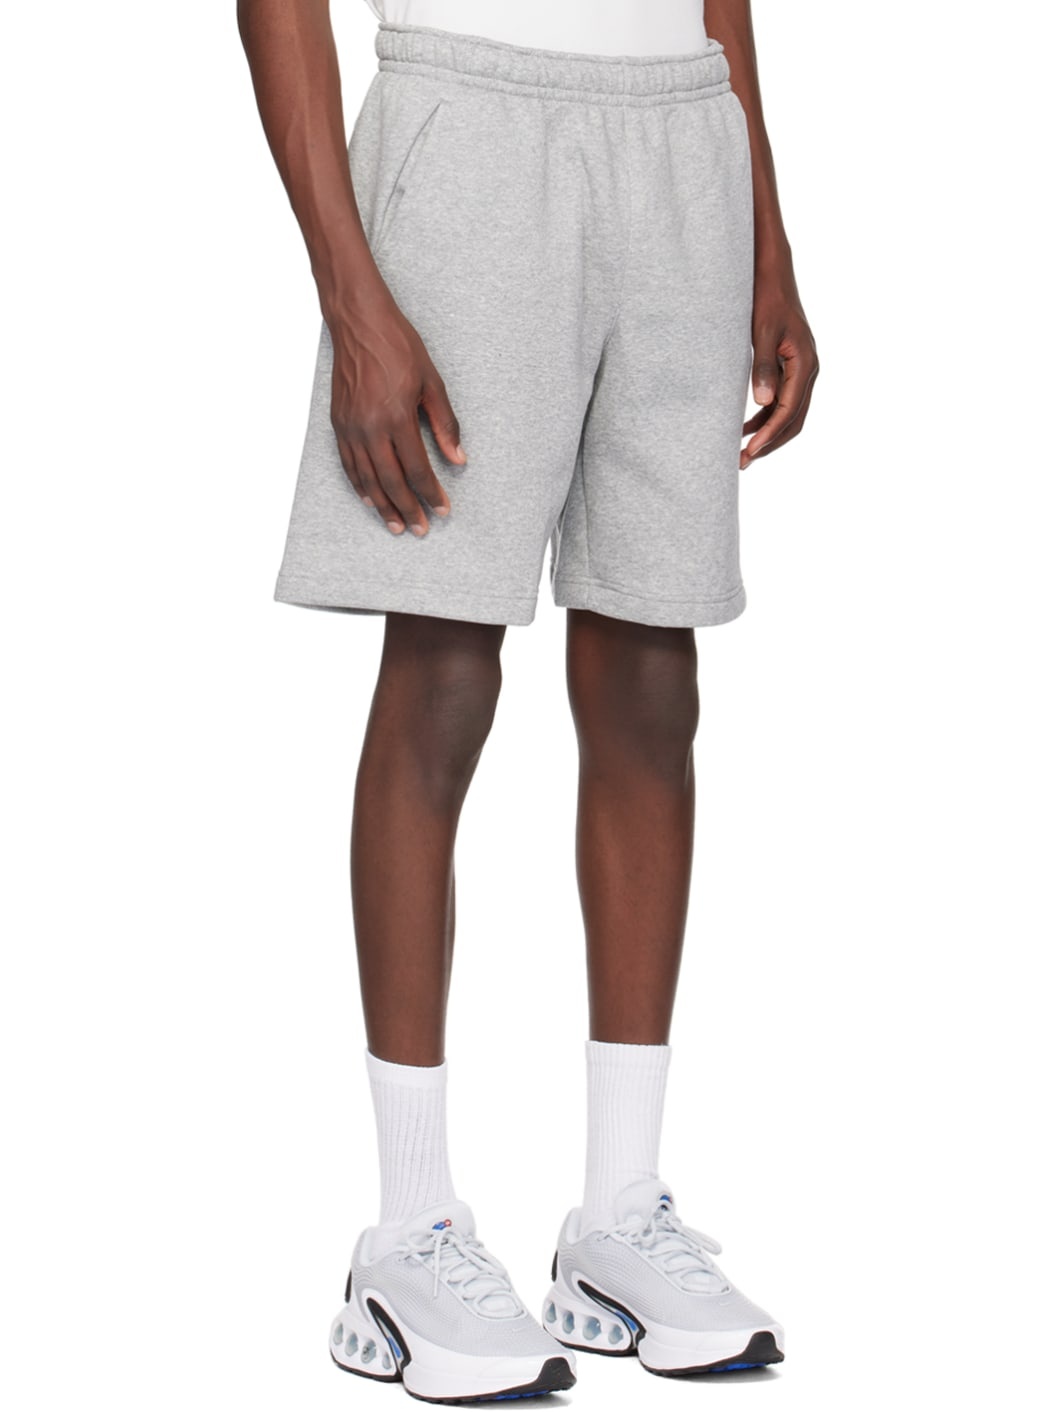 Gray Printed Shorts - 2